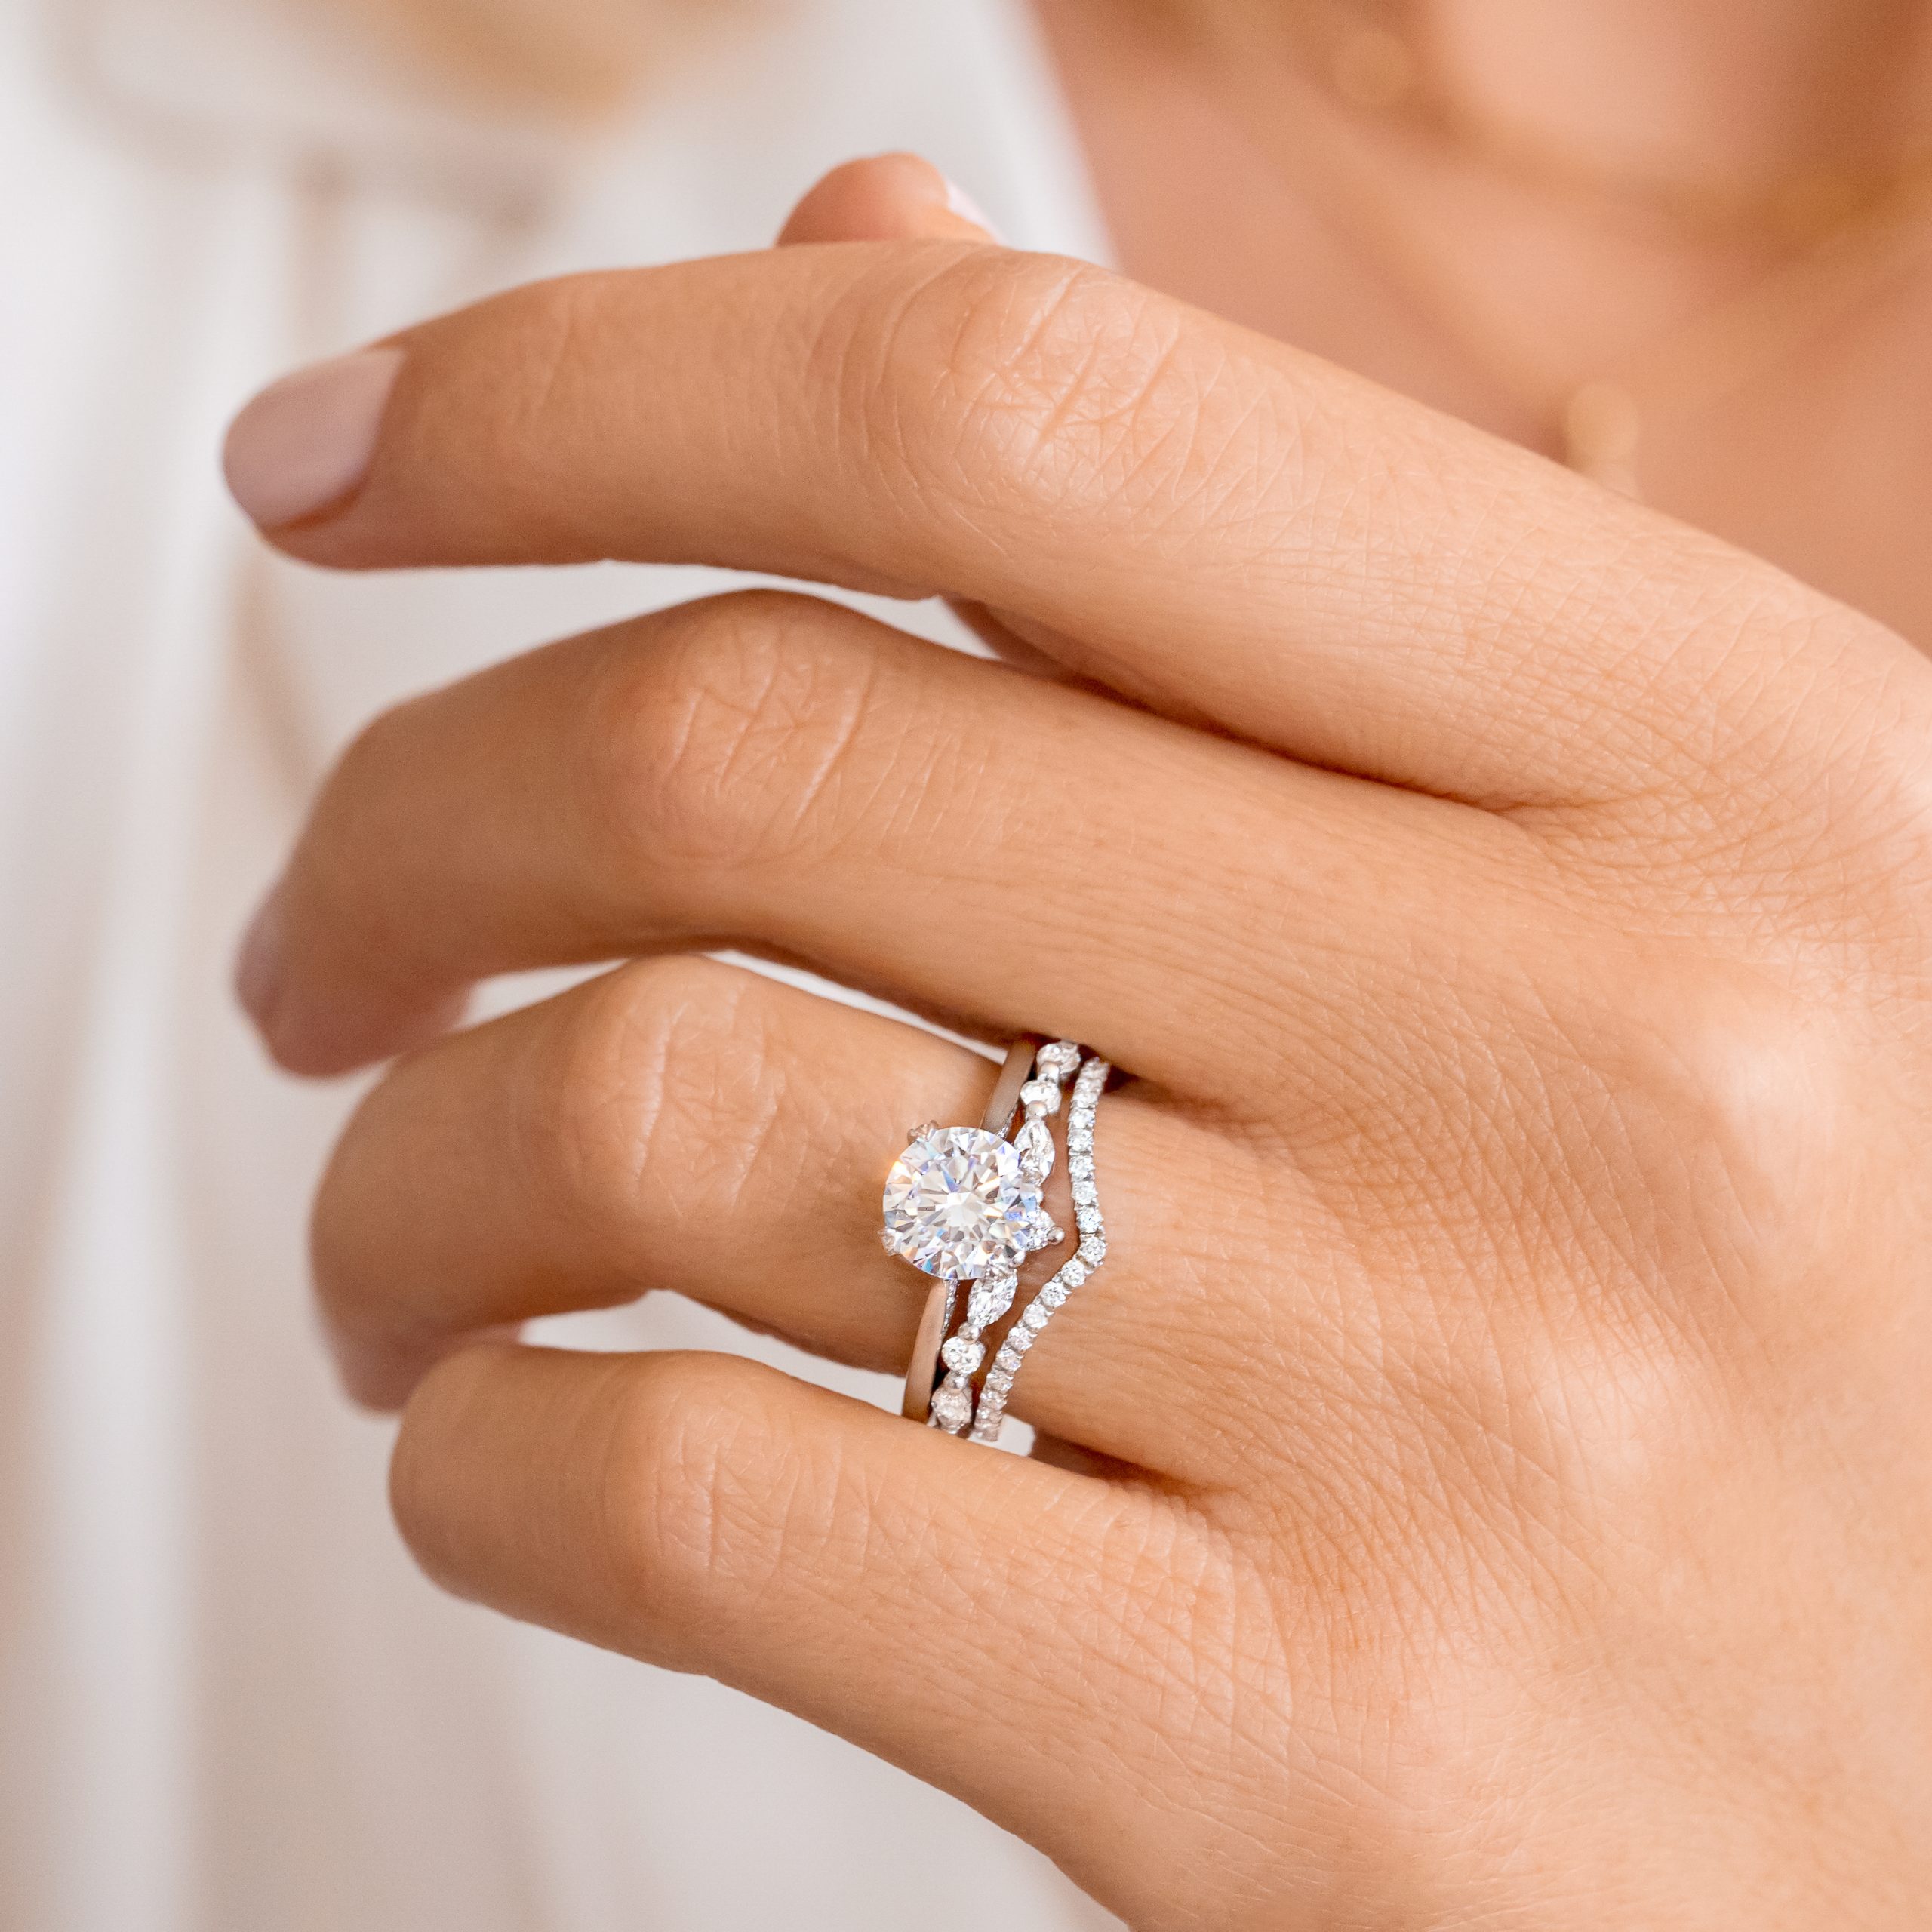 Natural Diamond Ring Diamond Gold Ring Triple Stone Ring Wedding Ring Promise Ring Gold Stacking Ring Engagement Ring